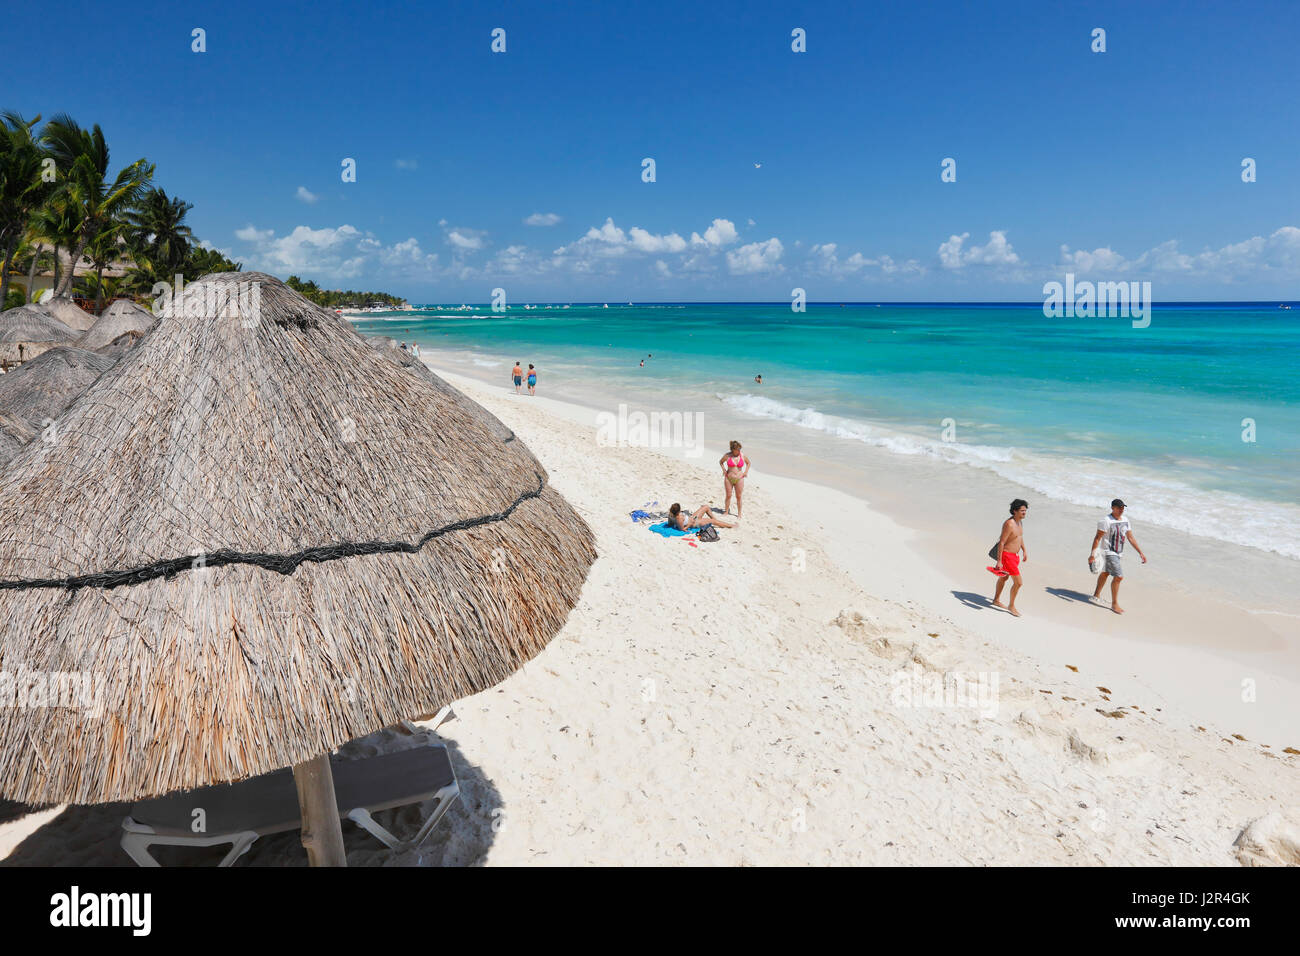 Playa del Carmen sand beach, Mexico Stock Photo